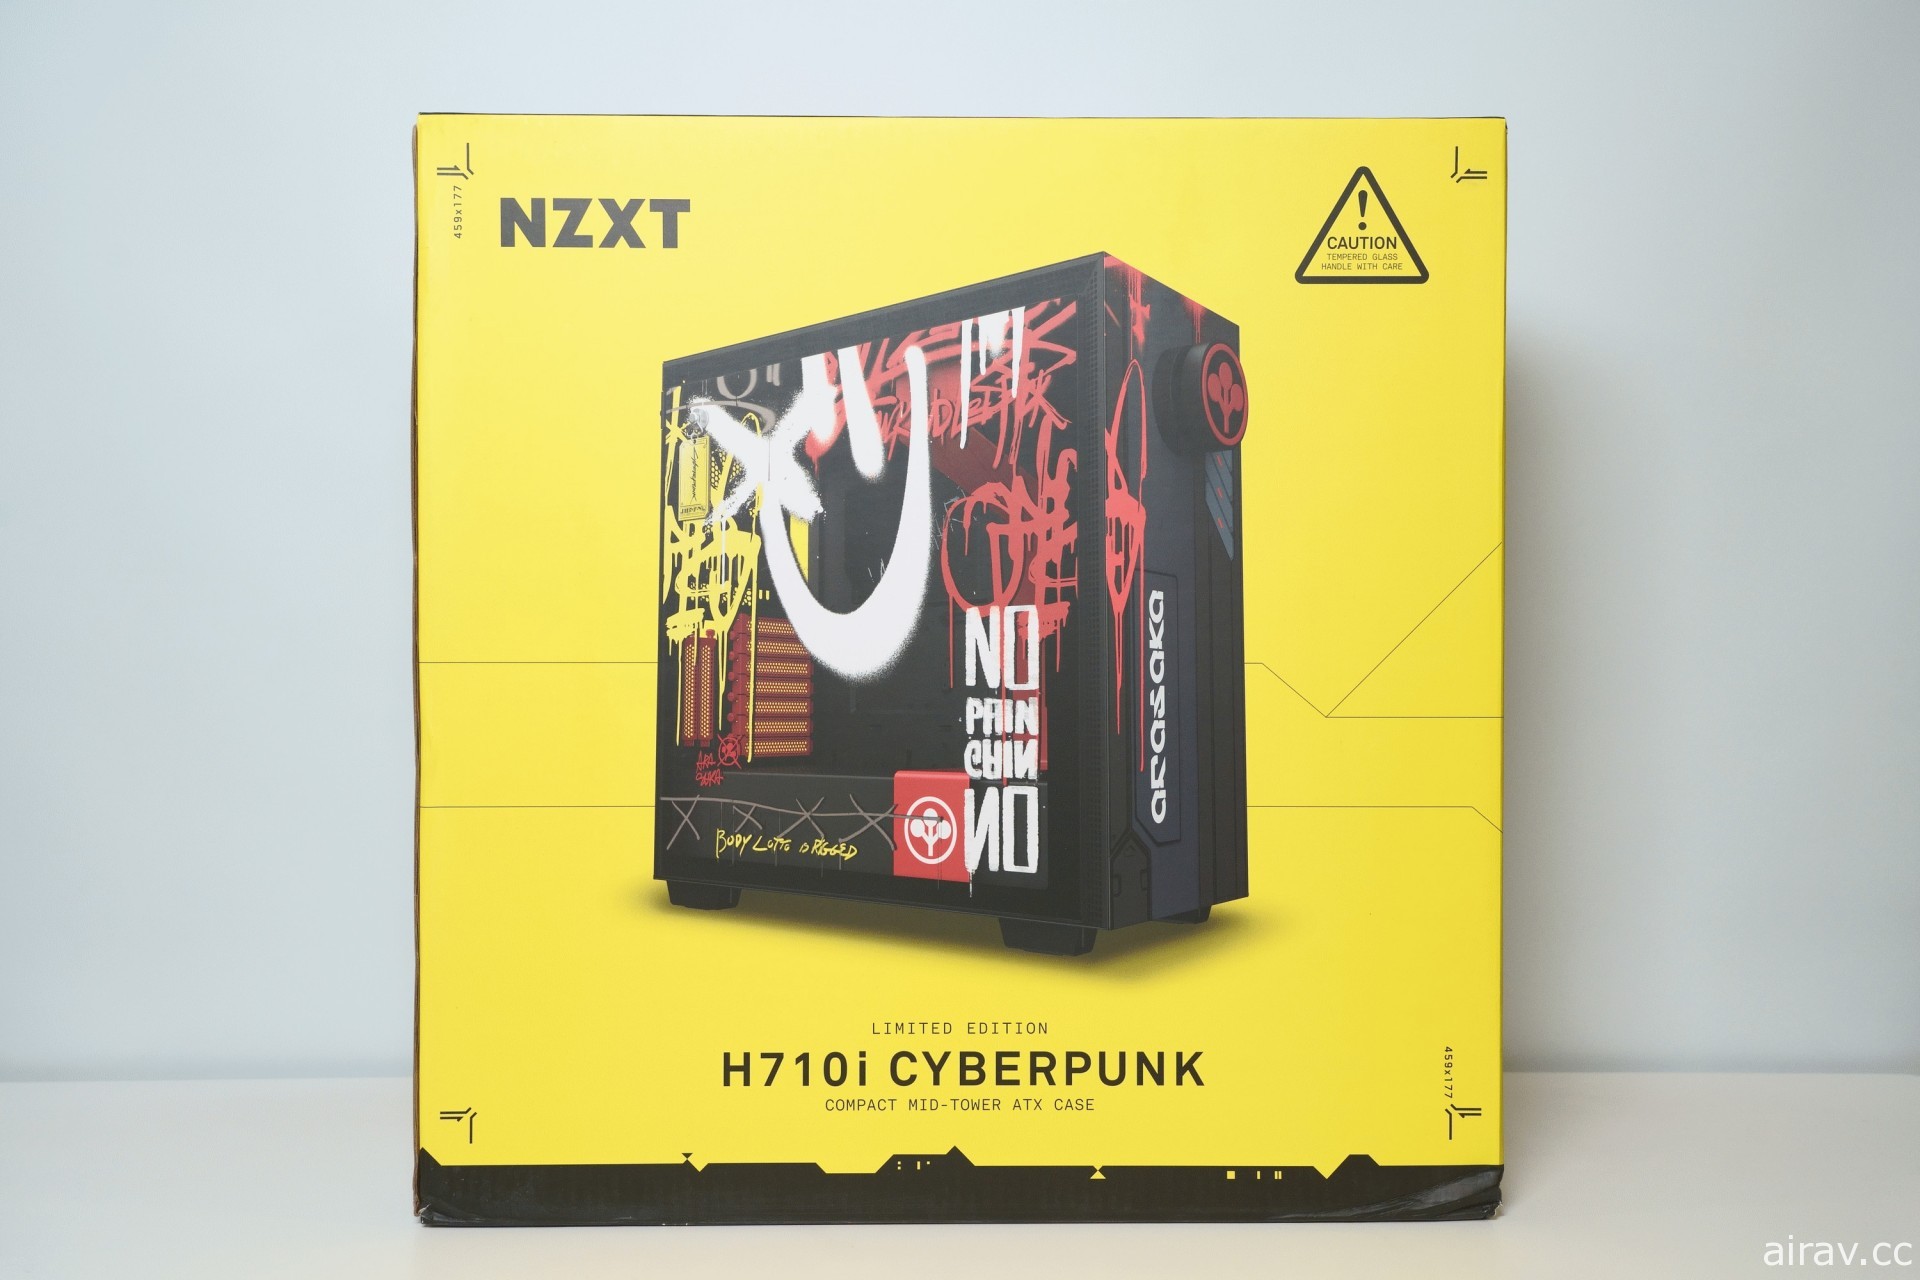 【開箱】NZXT《電馭叛客 2077》特製機殼「CRFT 09 Cyberpunk」限量登台